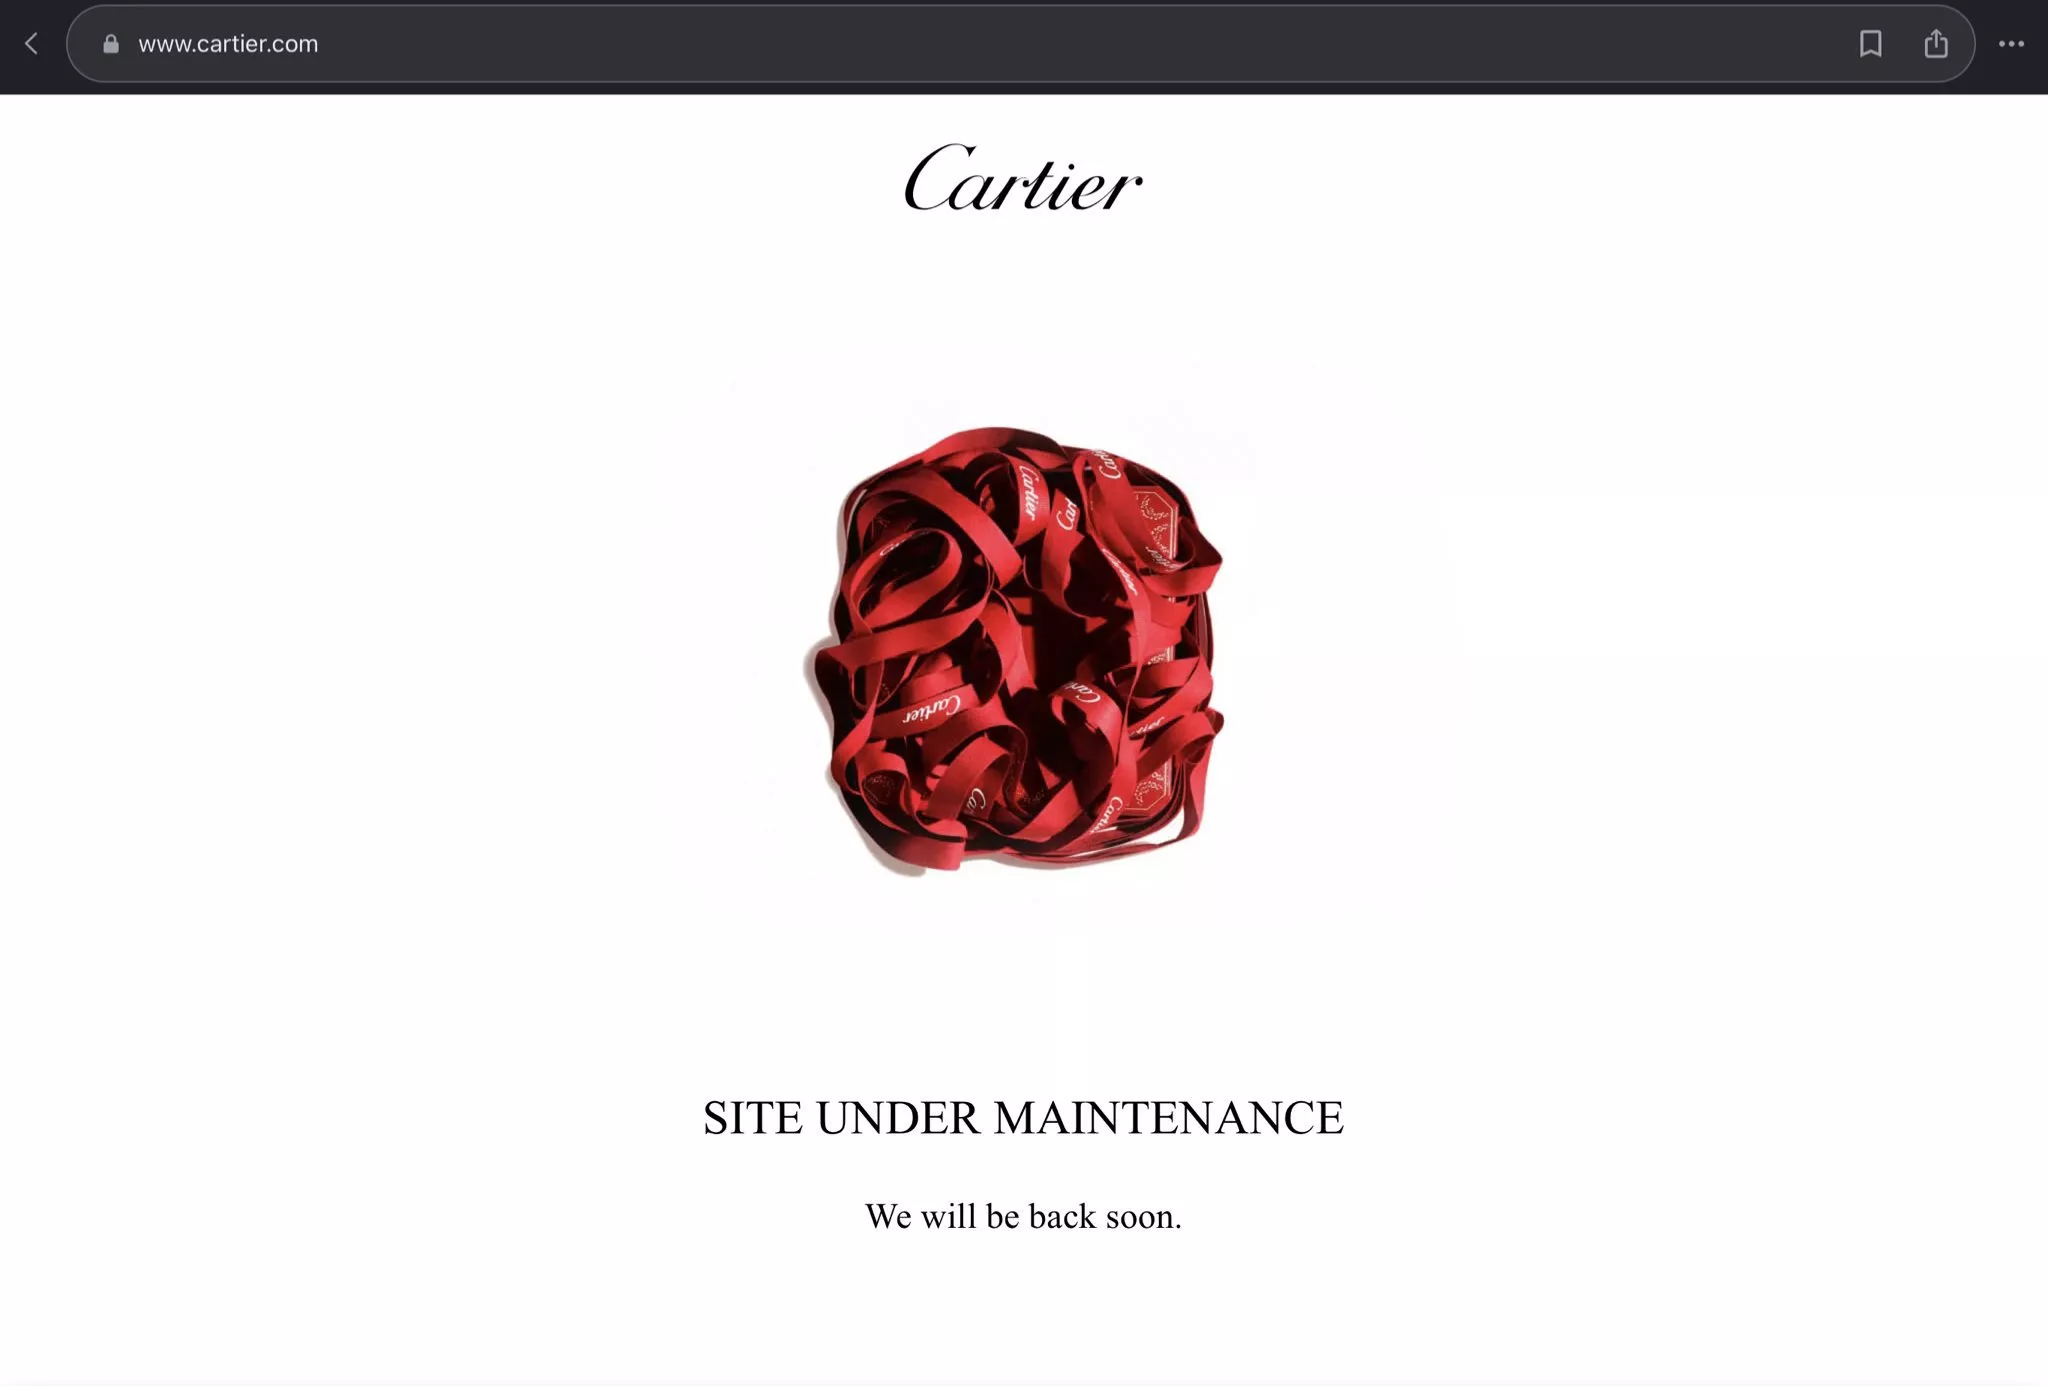 "У него ничего нет под пиджаком..." - Ви из BTS заставил фанатов вспотеть от новых фотографий для Cartier